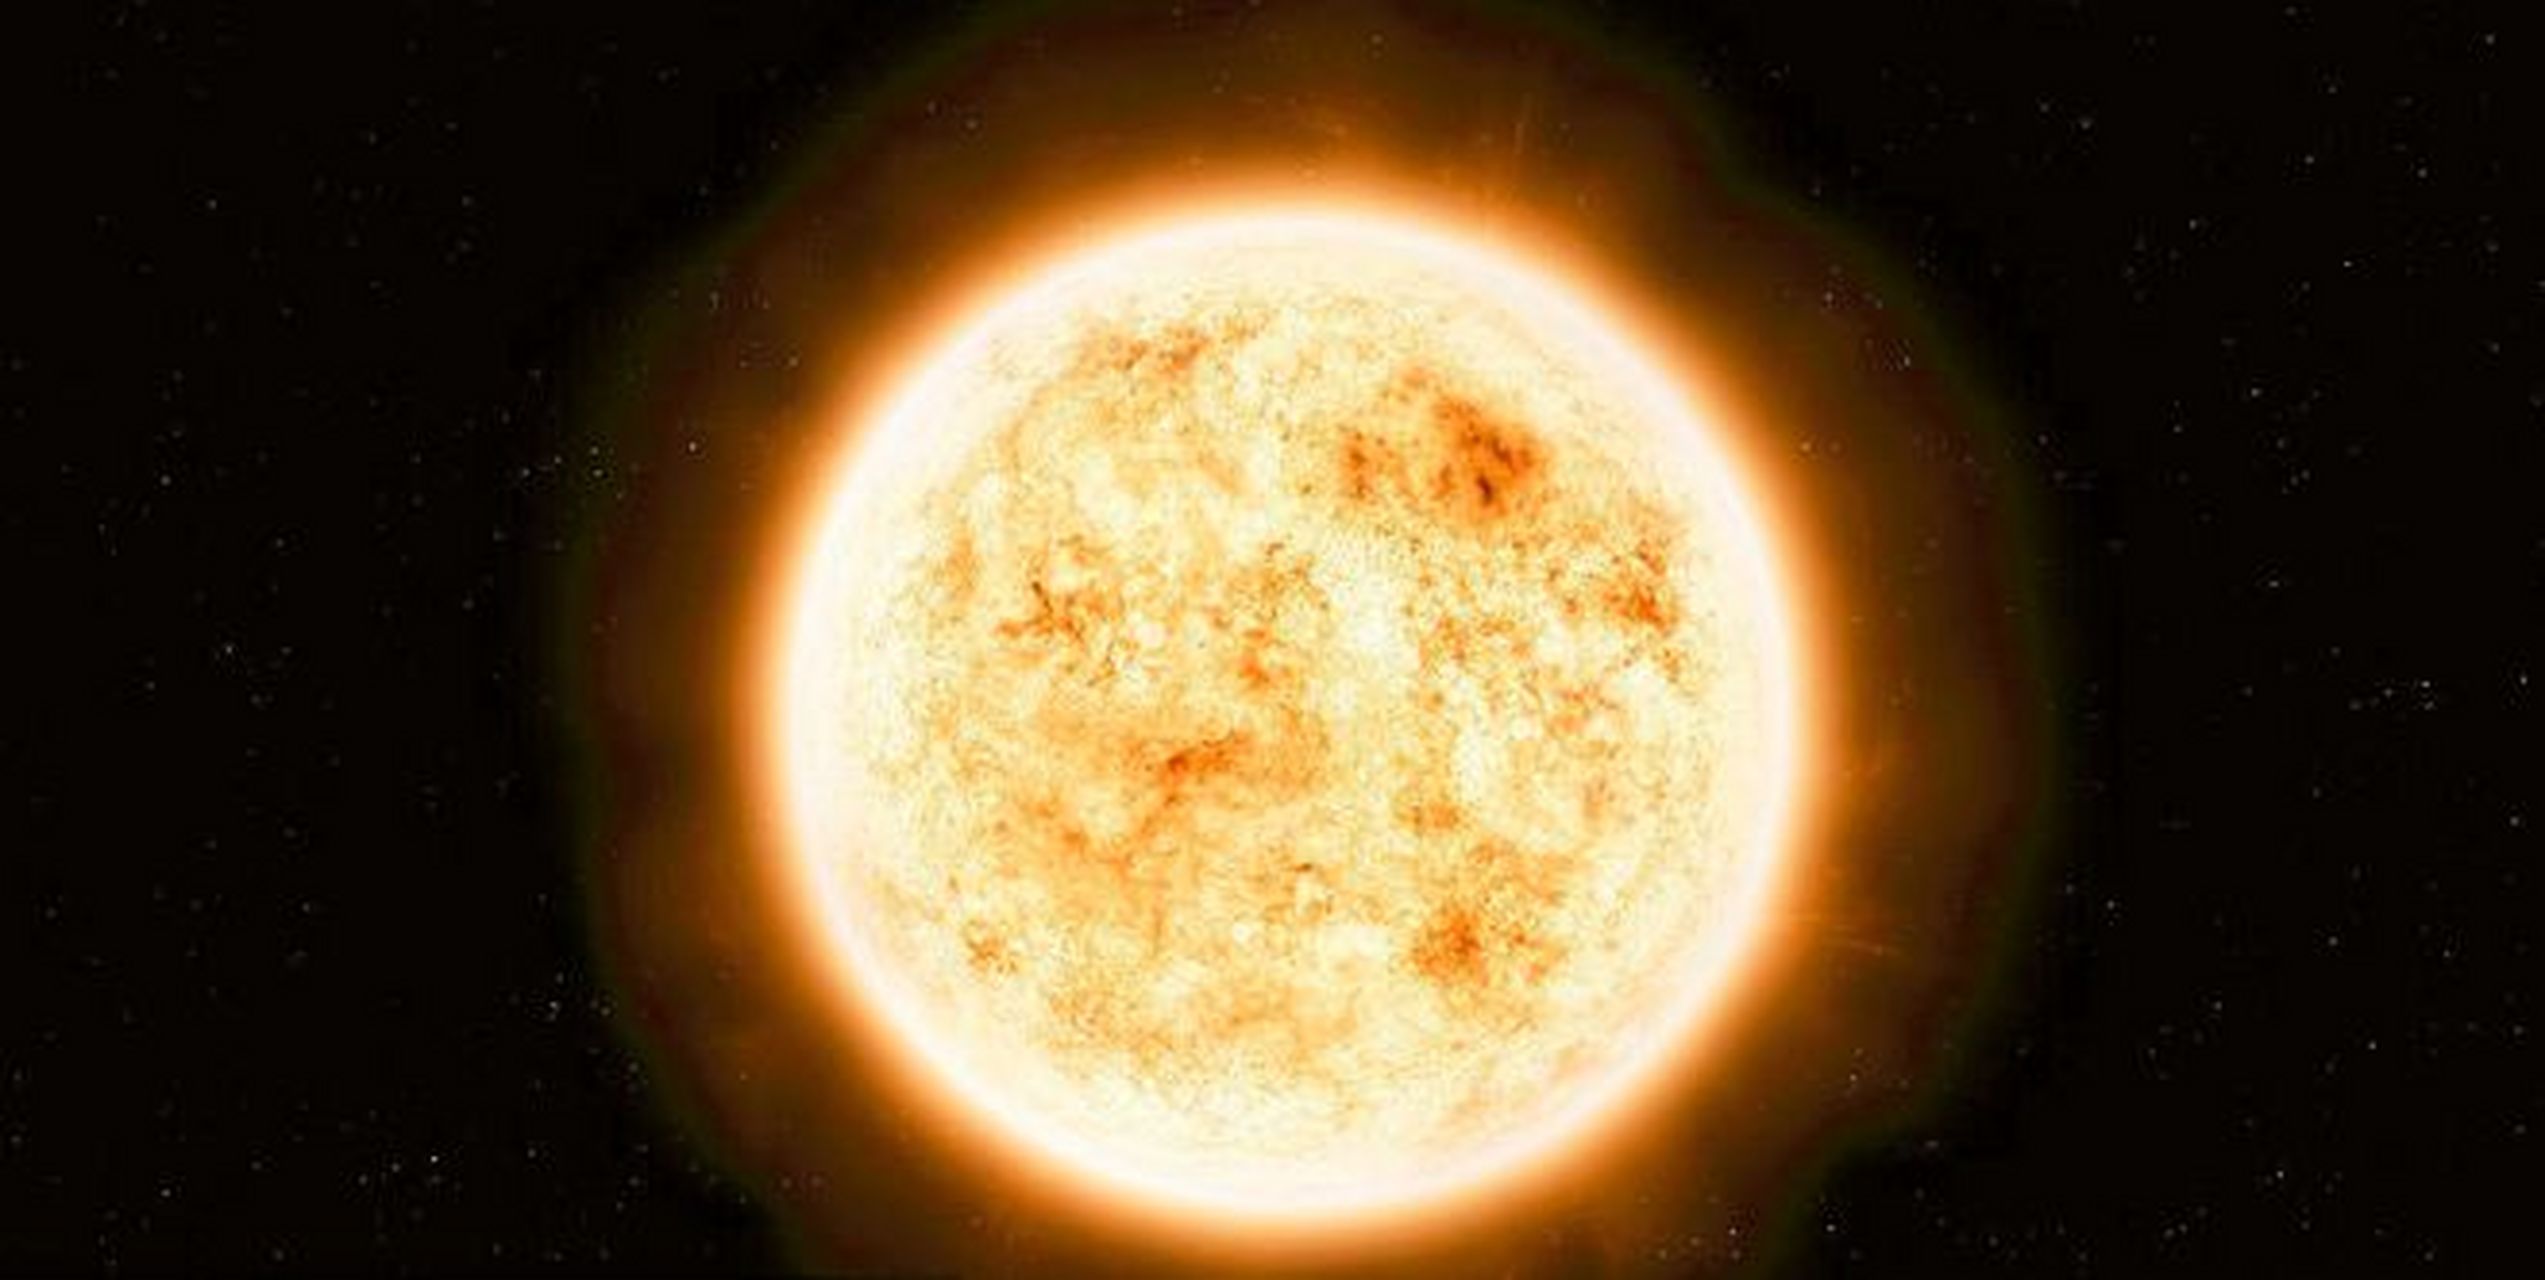 目前人类已知的最大星体是位于大犬座的#红色超巨星—大犬座vy星